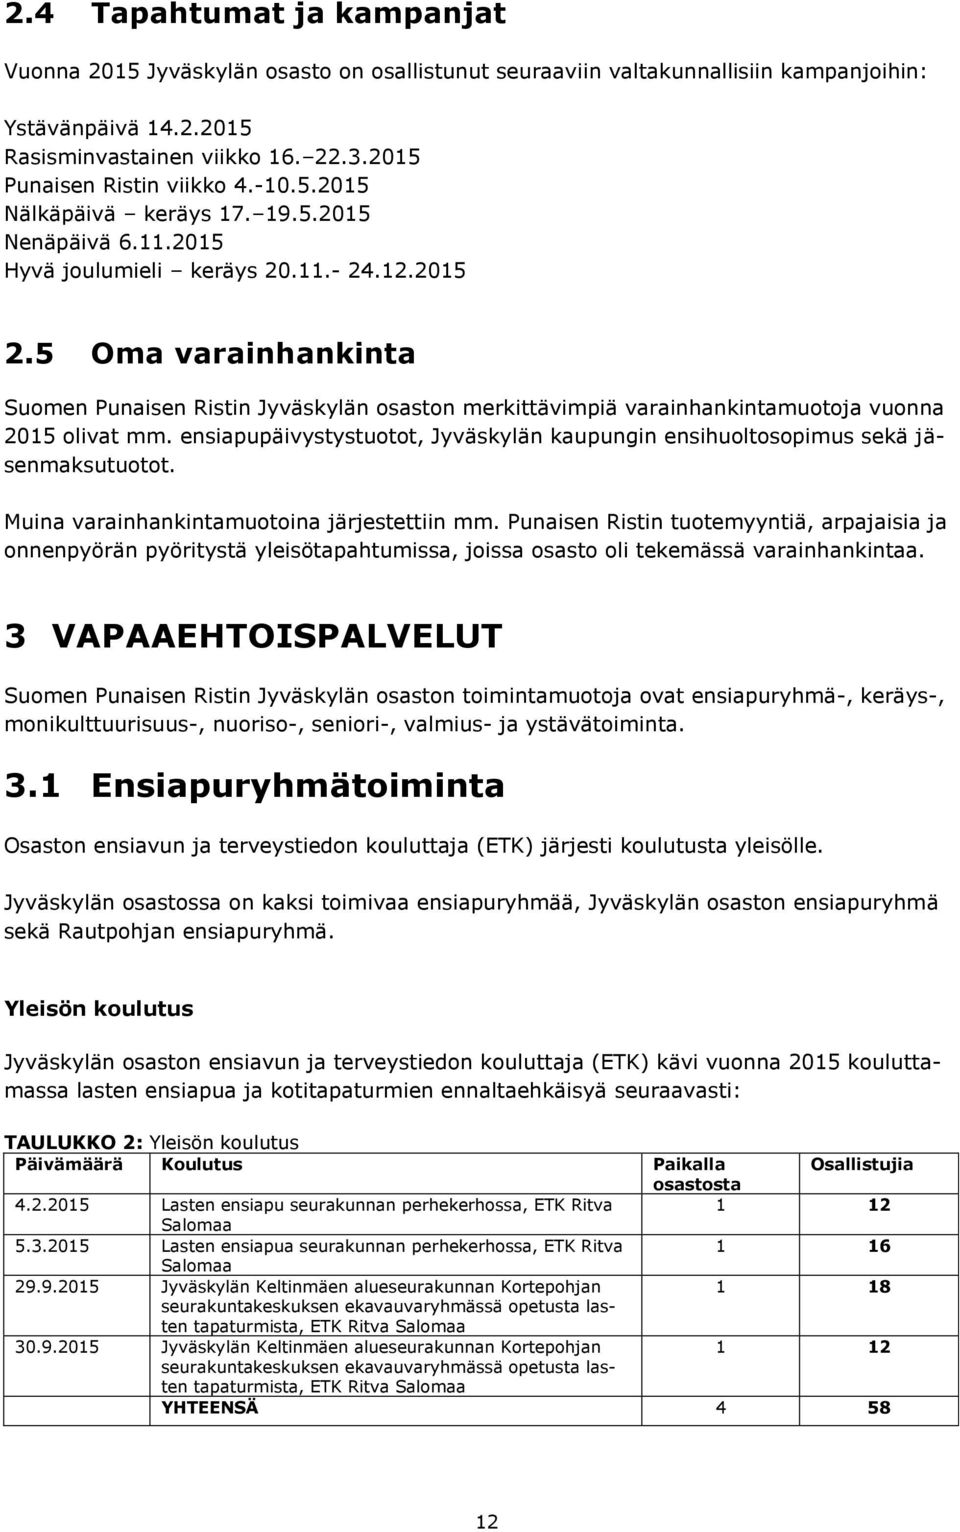 5 Oma varainhankinta Suomen Punaisen Ristin Jyväskylän osaston merkittävimpiä varainhankintamuotoja vuonna 2015 olivat mm.